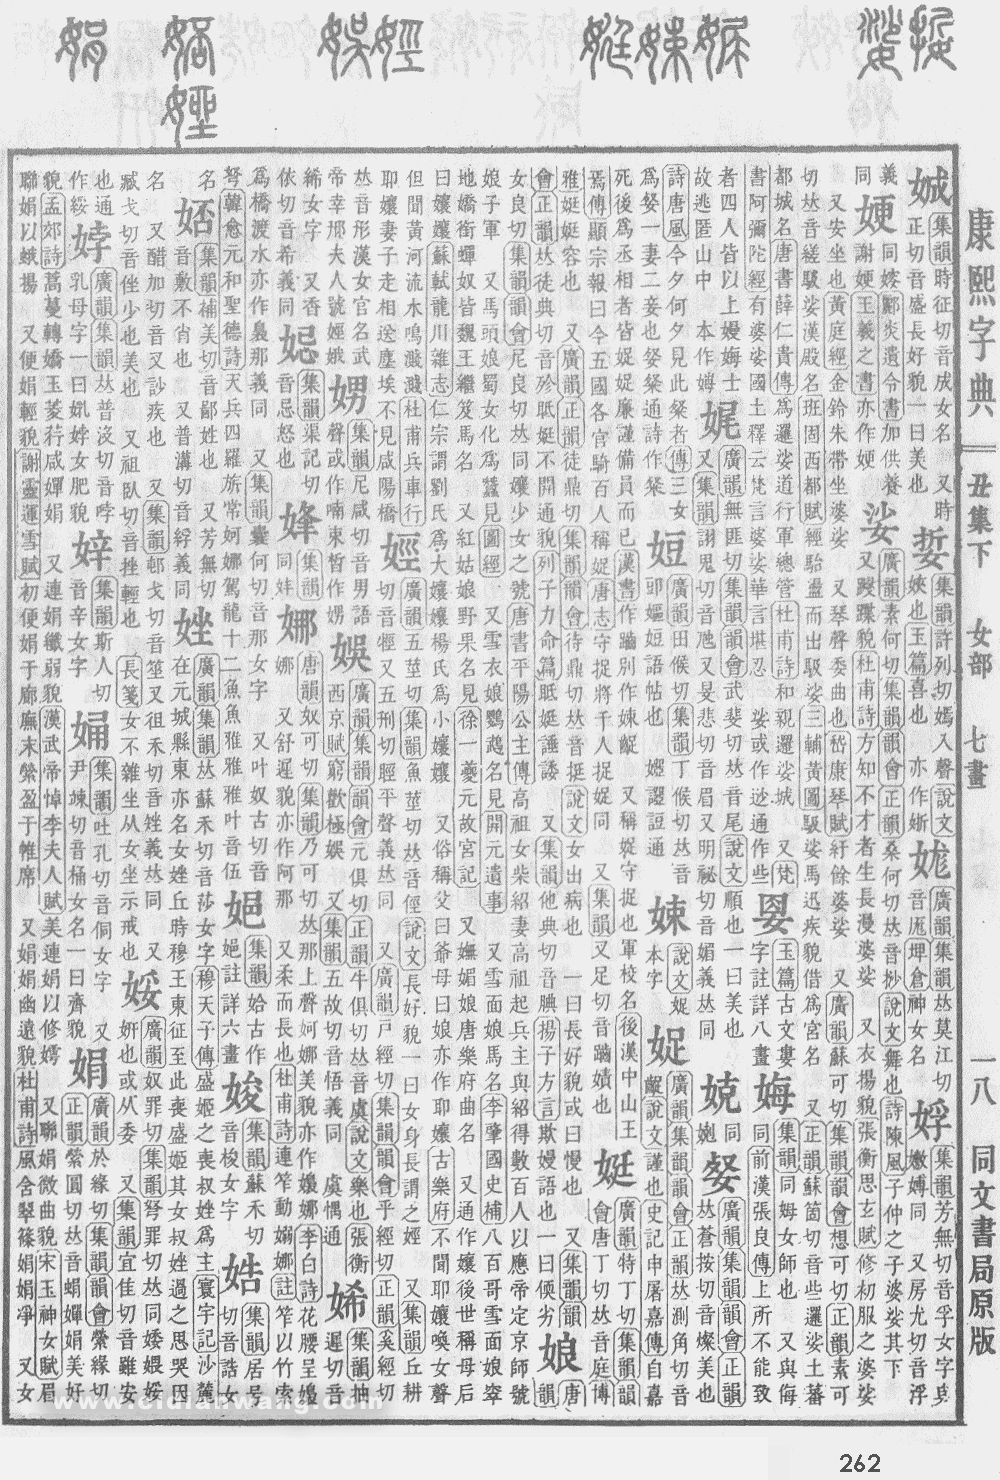 康熙字典掃描版第262頁